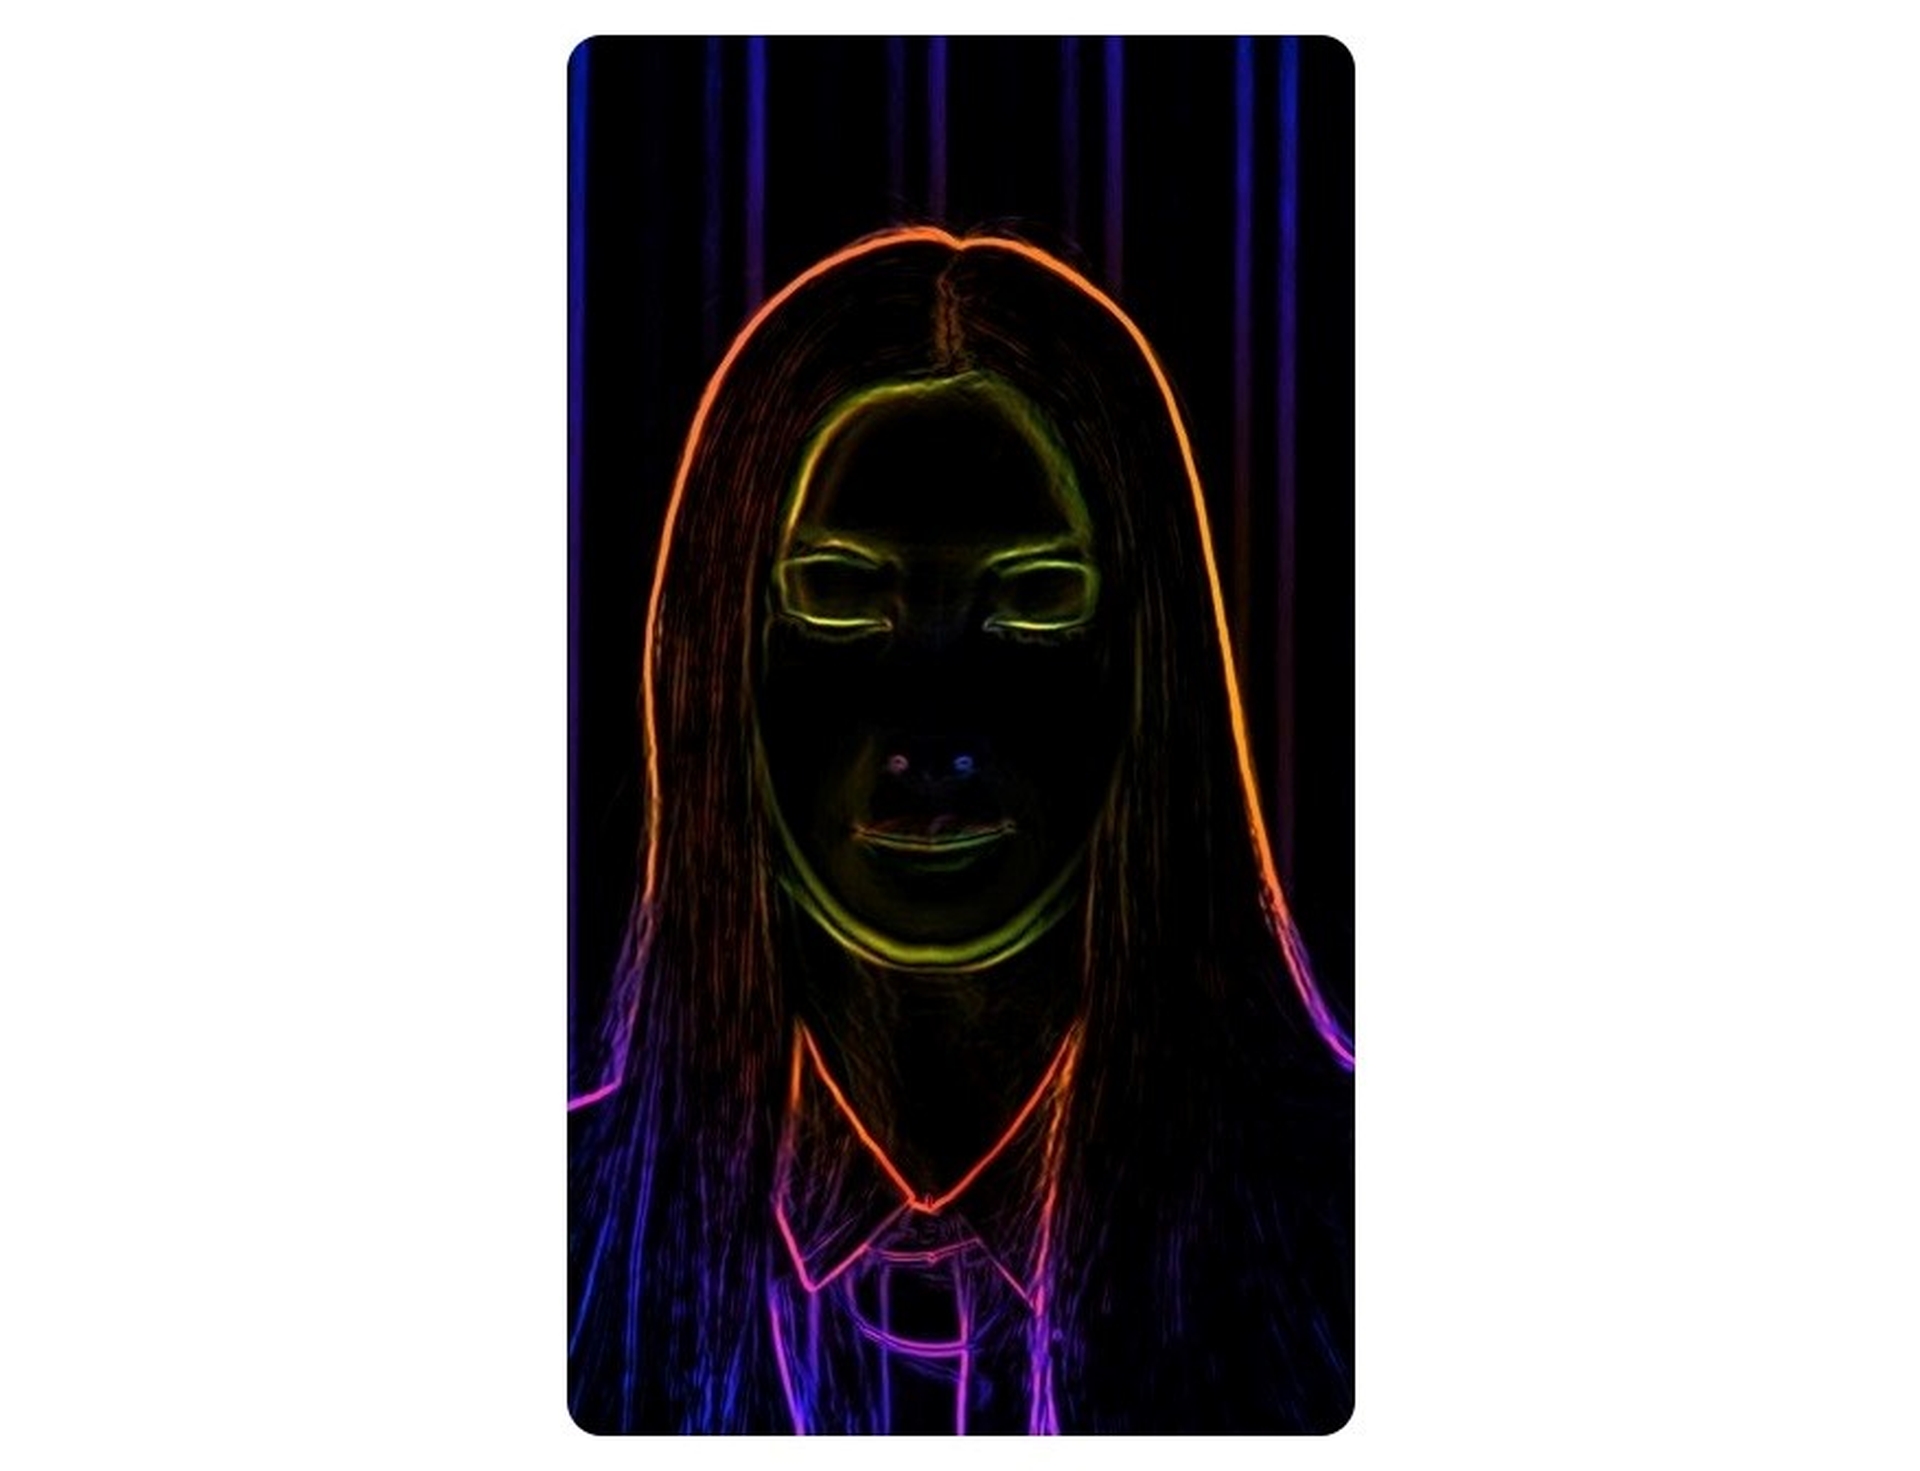 How to get TikTok Neon Lines filter?